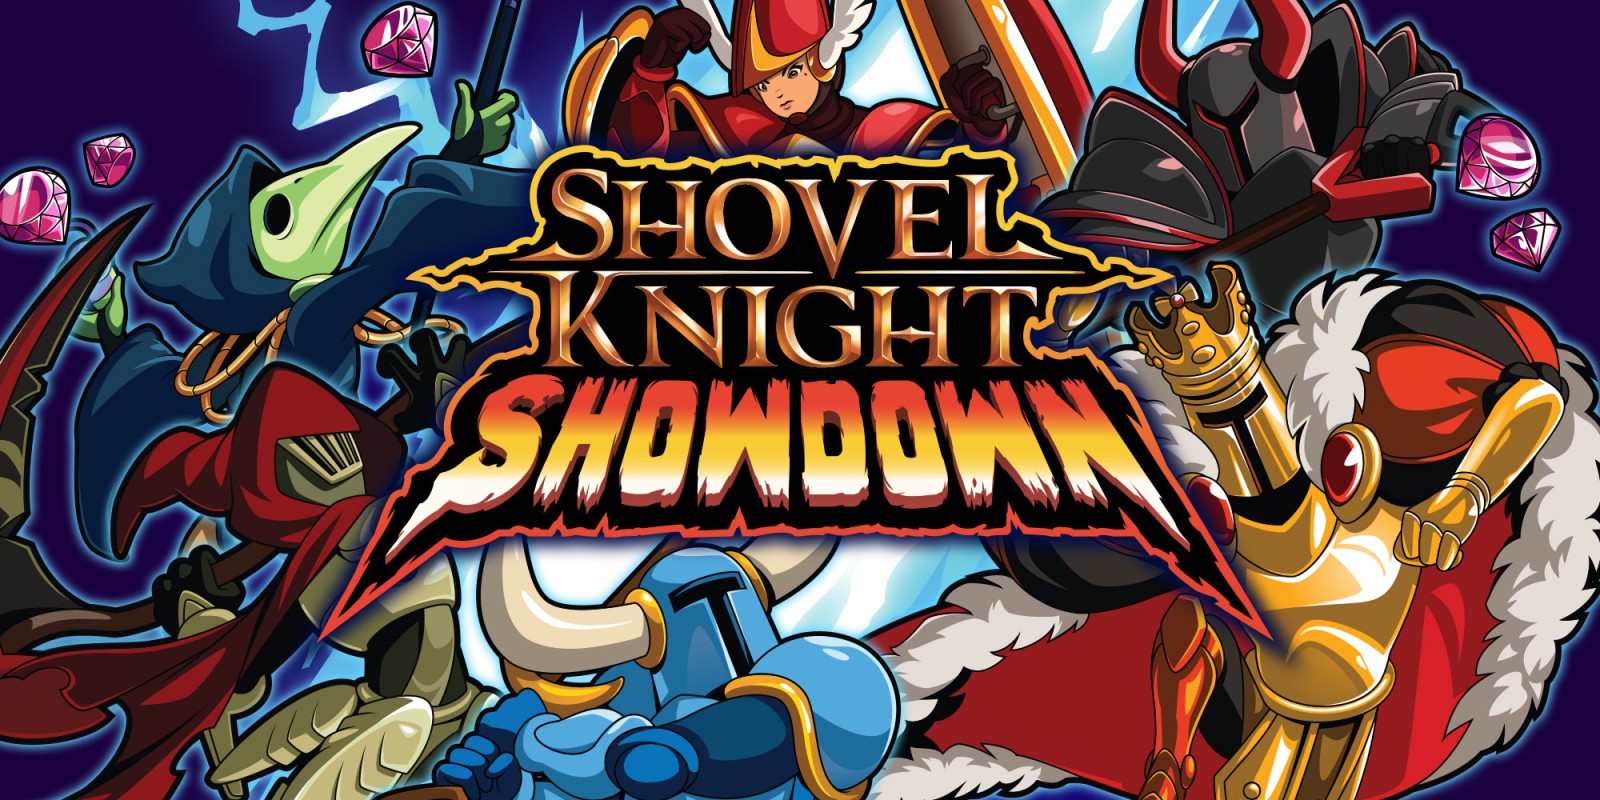 Shovel Knight Showdown Full Version Mobile Game